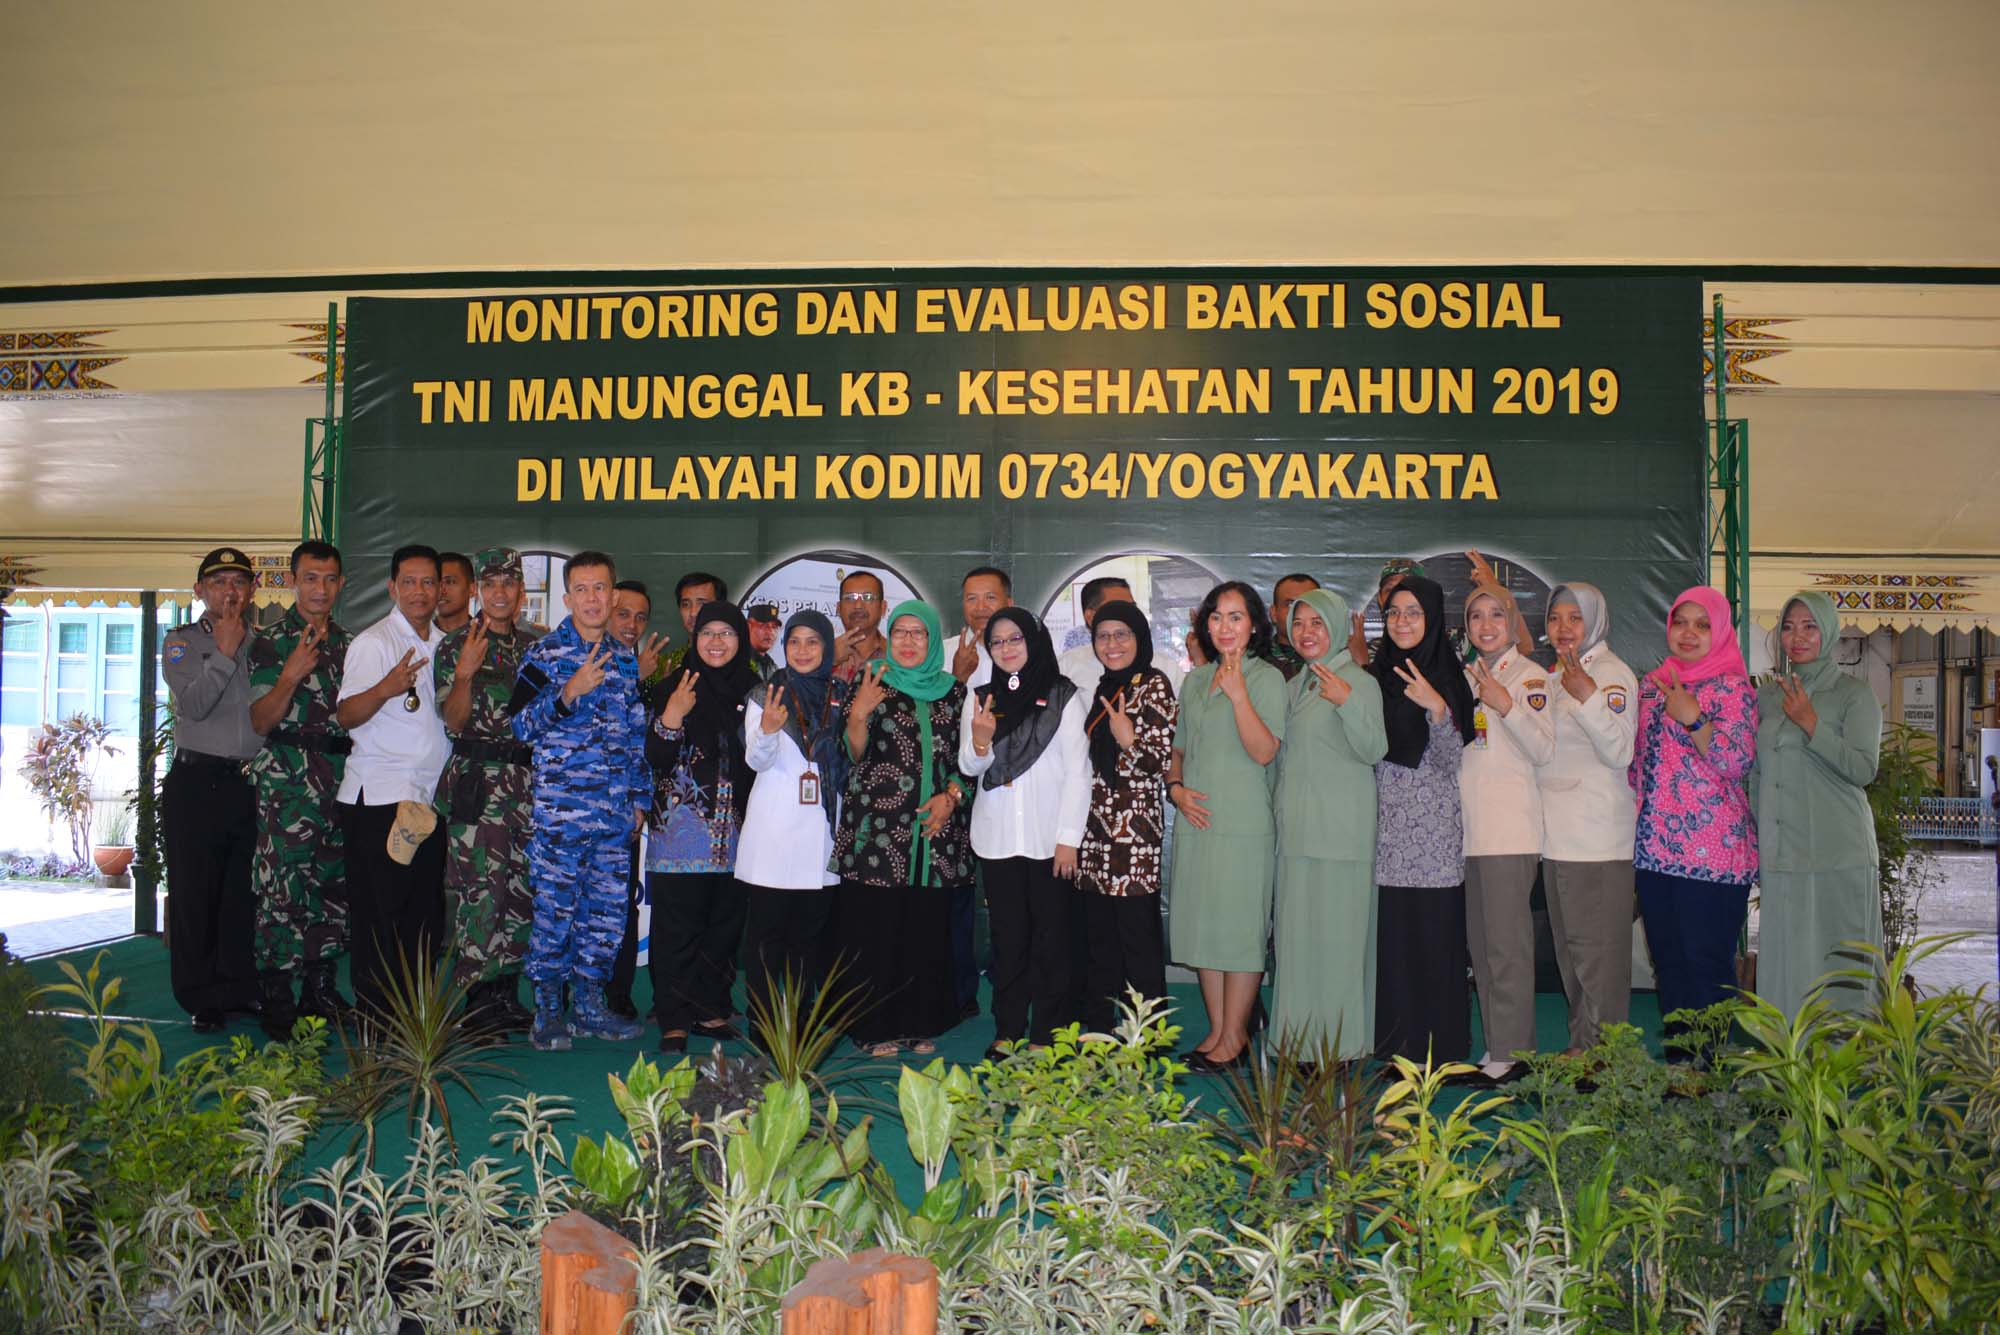 TNI Manunggal KB - Kesehatan Tahun 2019